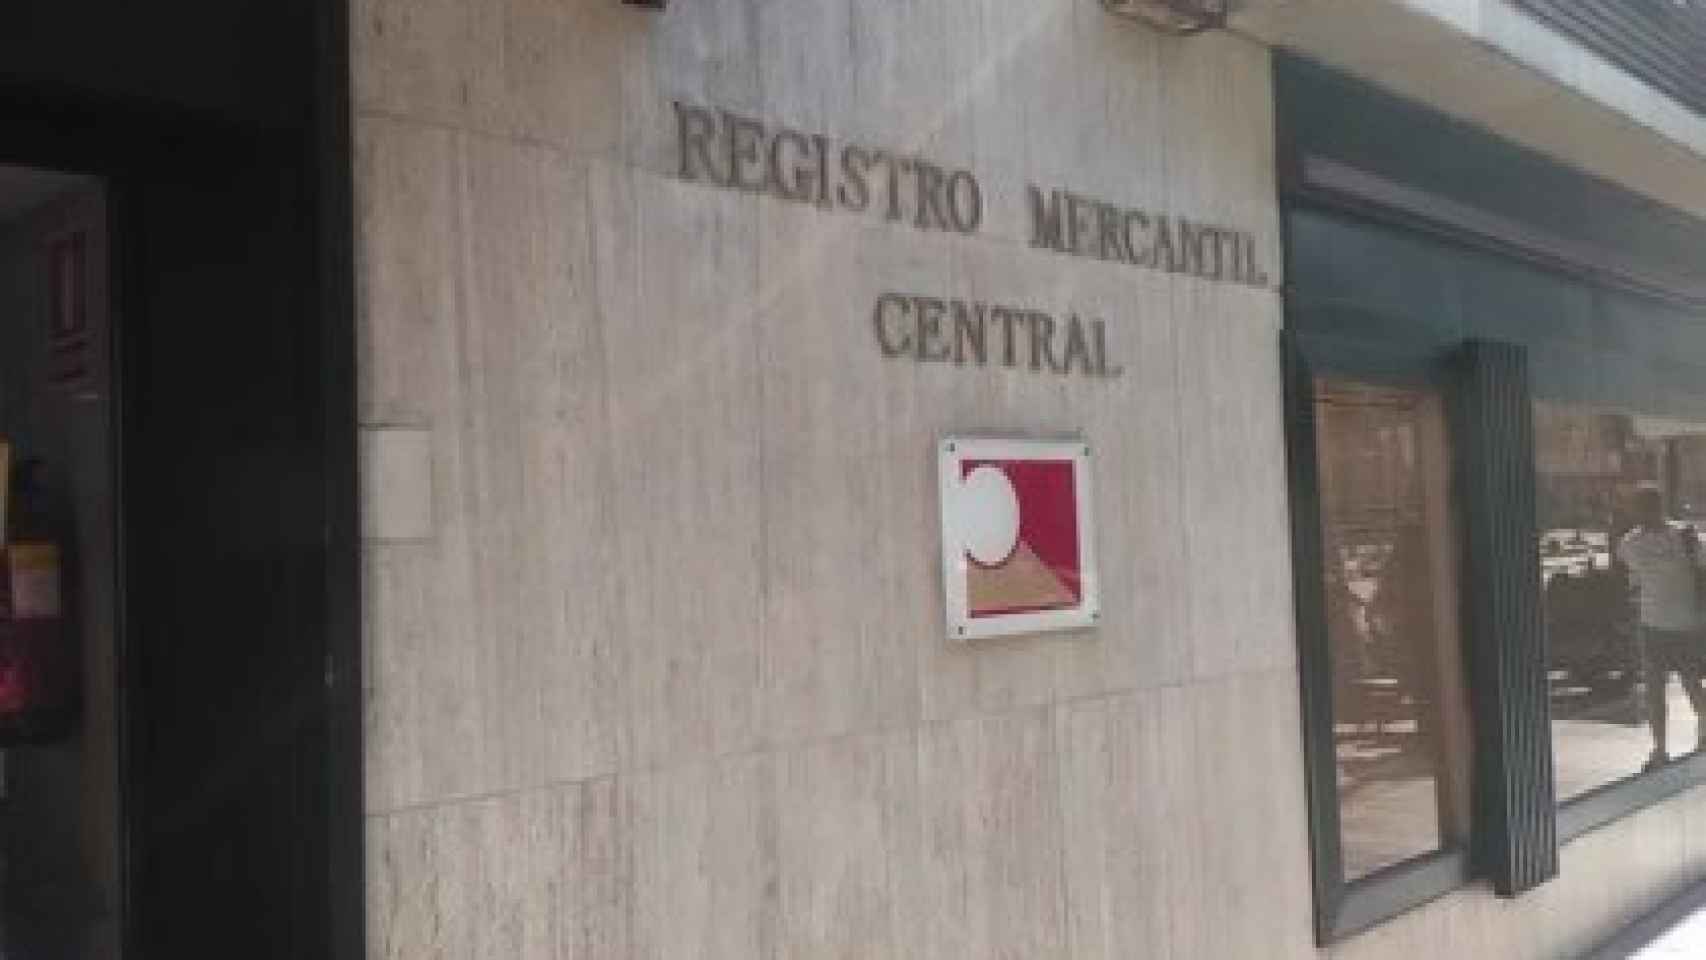 El Registro Mercantil.